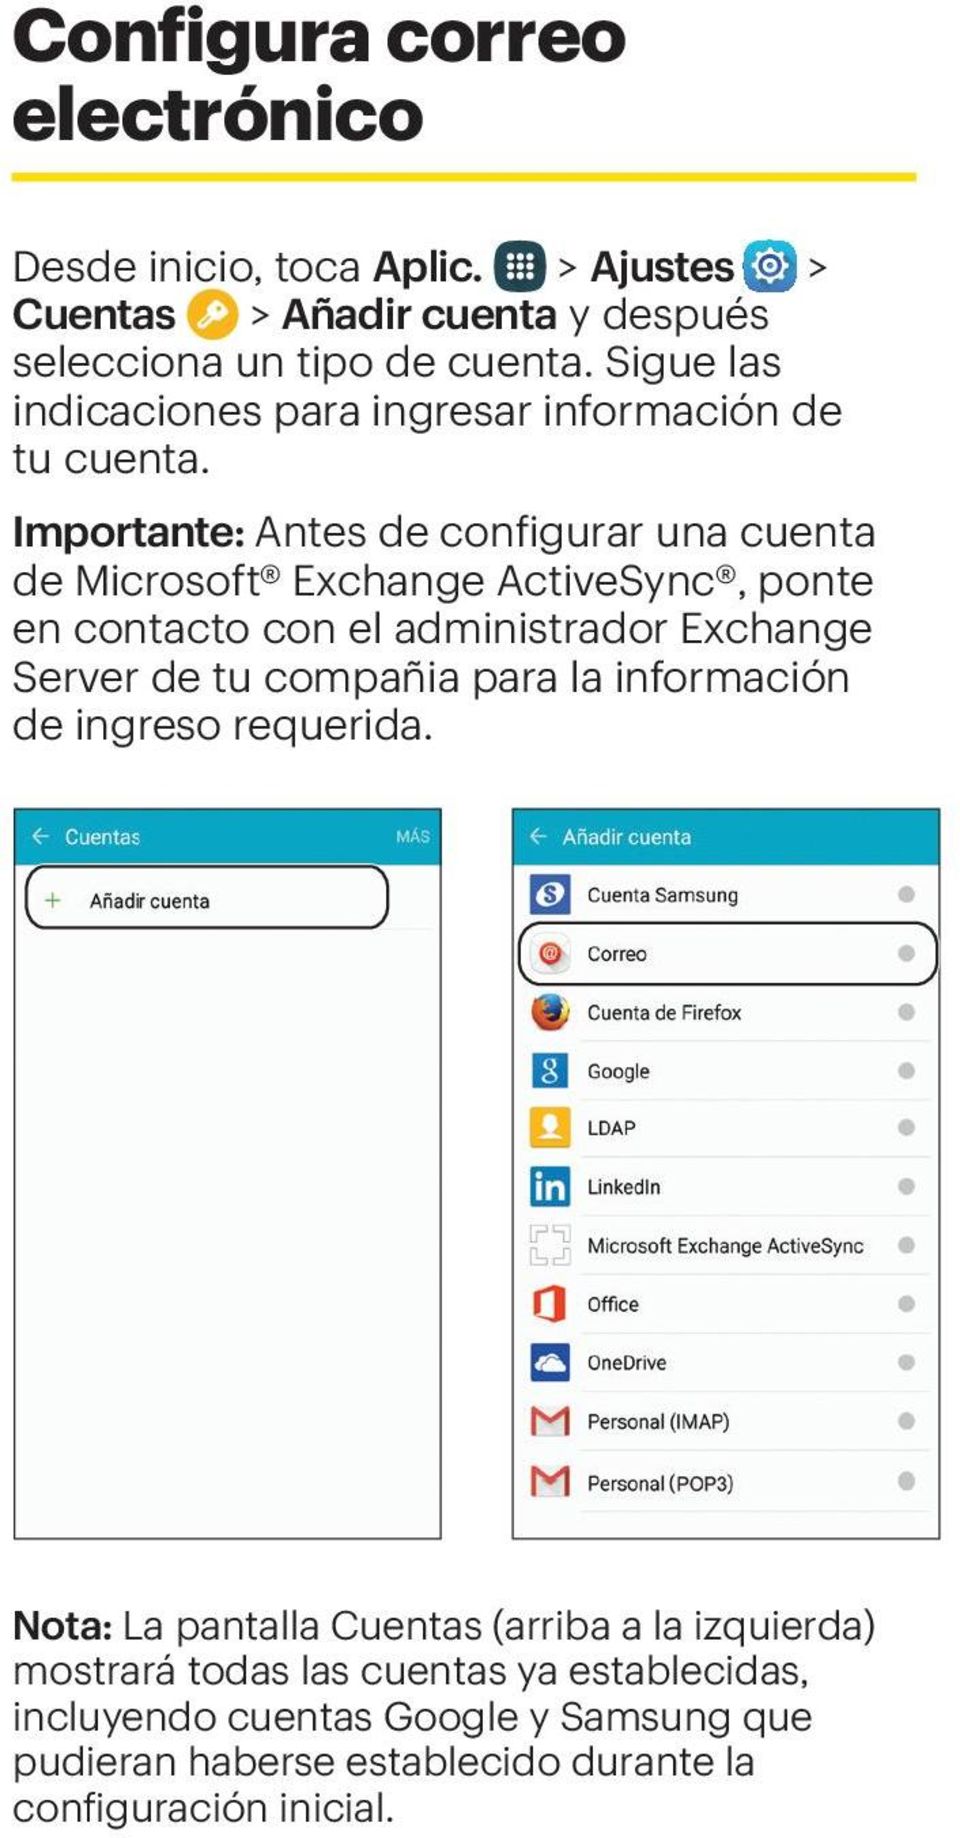 Importante: Antes de configurar una cuenta de Microsoft Exchange ActiveSync, ponte en contacto con el administrador Exchange Server de tu